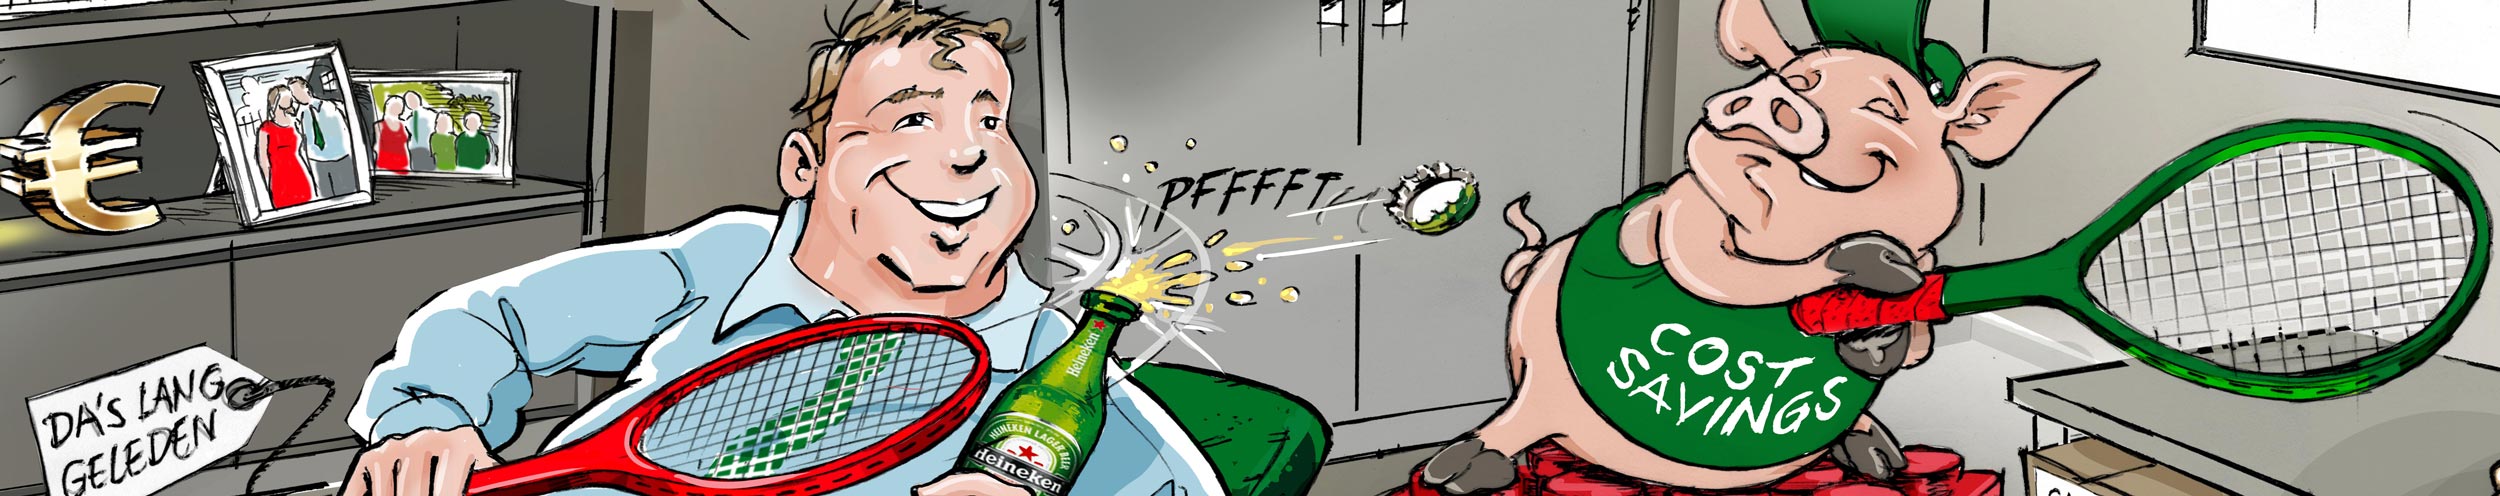 karikatuur-cadeau-banner-Heineken-2